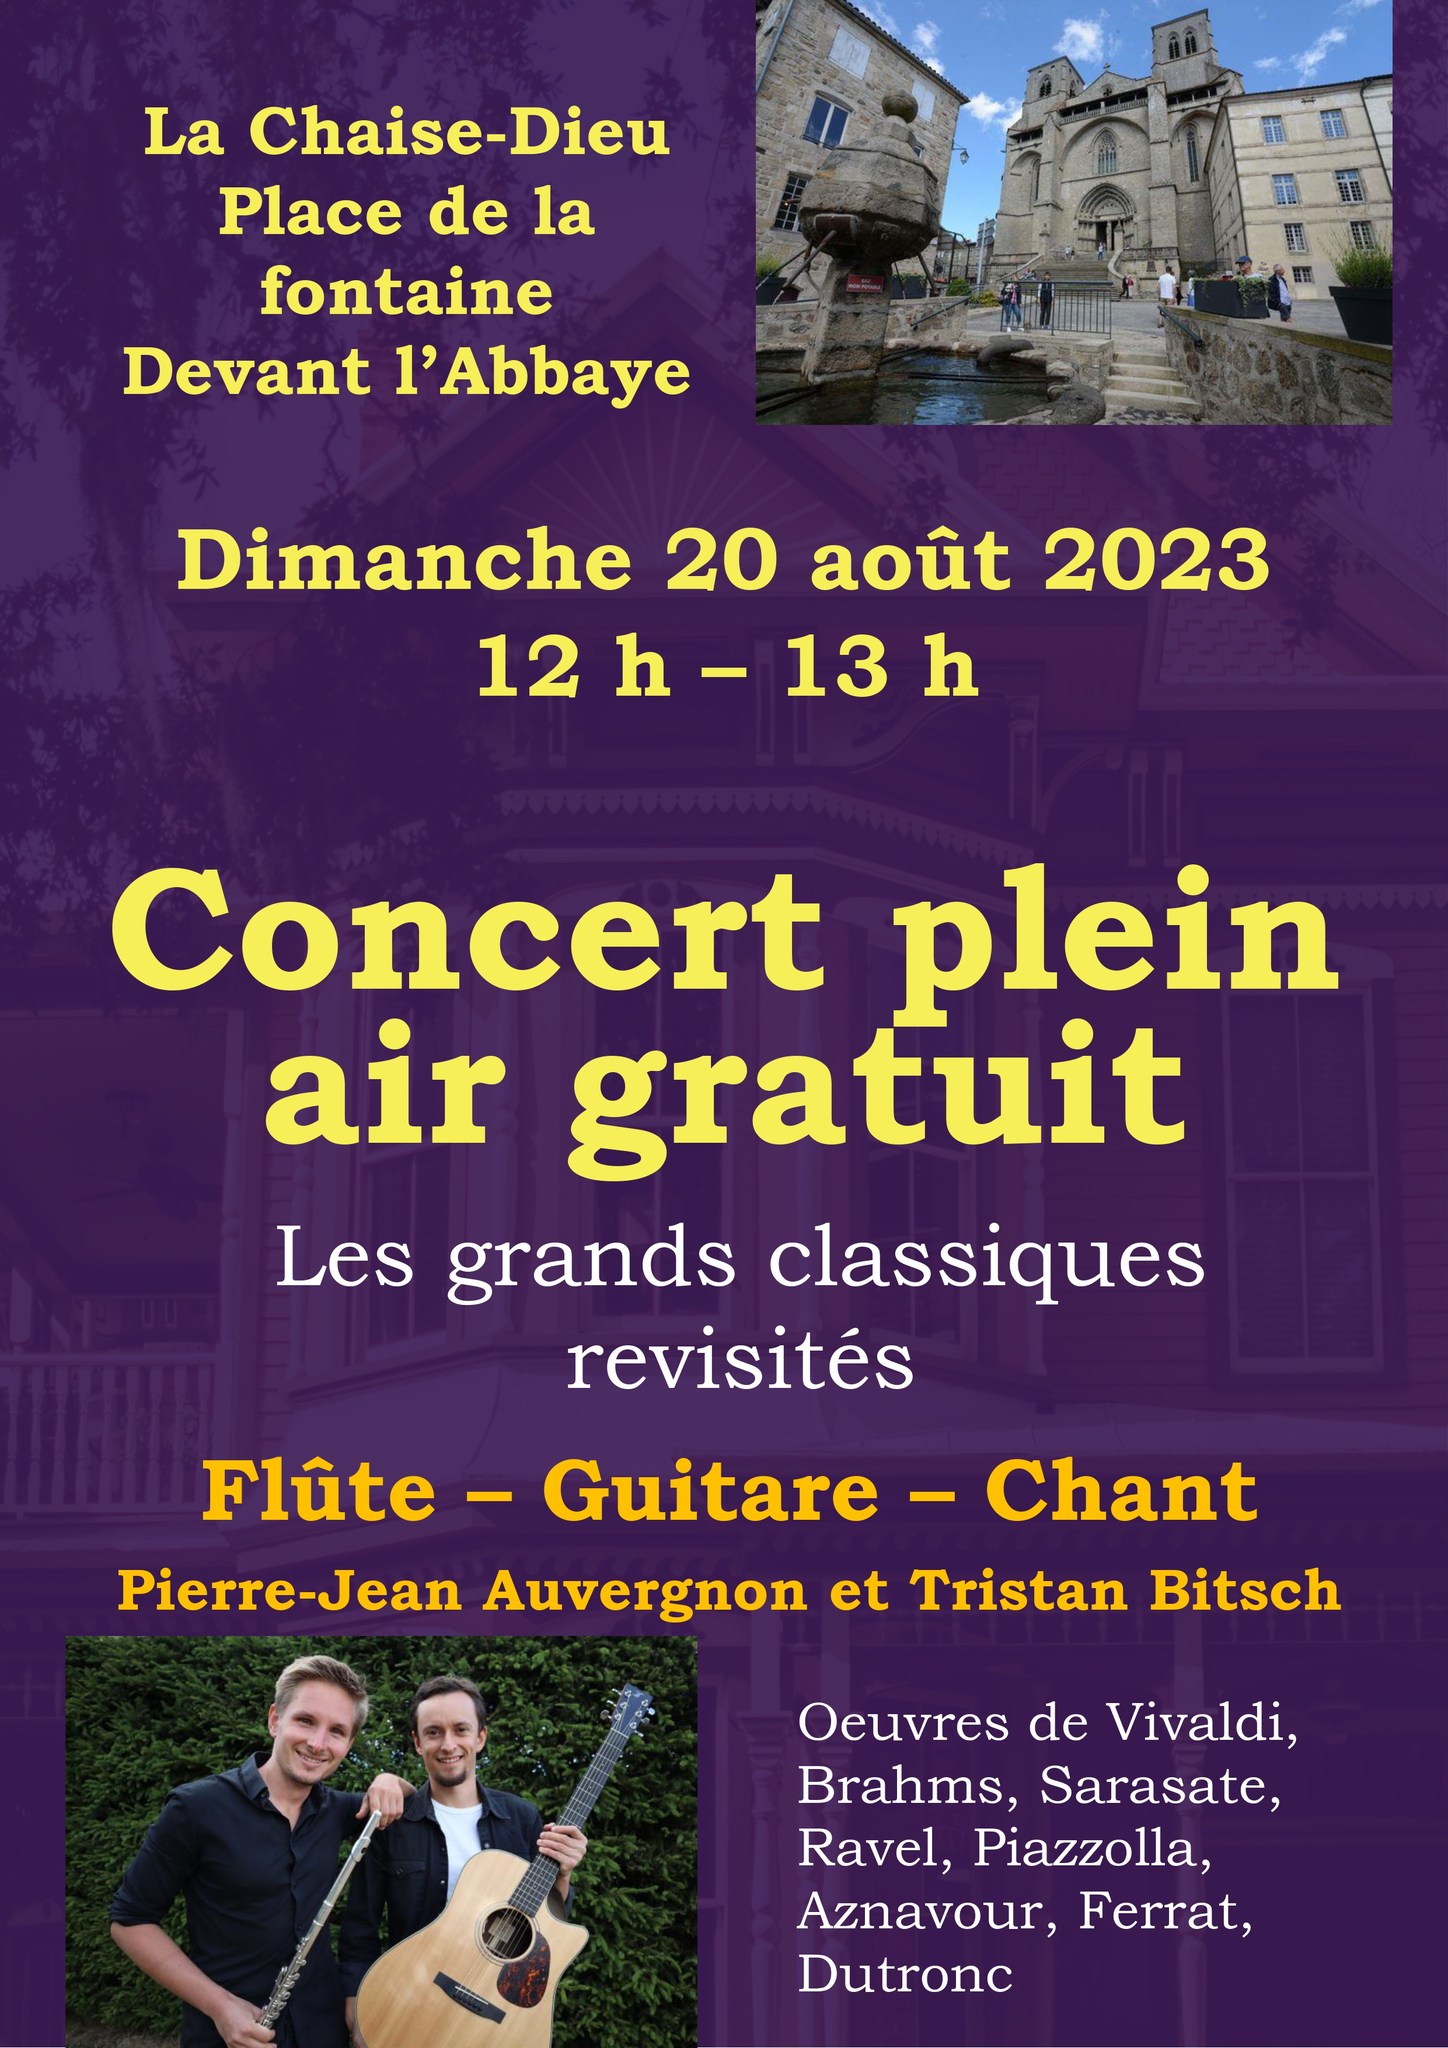 Concert plein air gratuit de Pierre-Jean Auvergnon et Tristan Bitsch